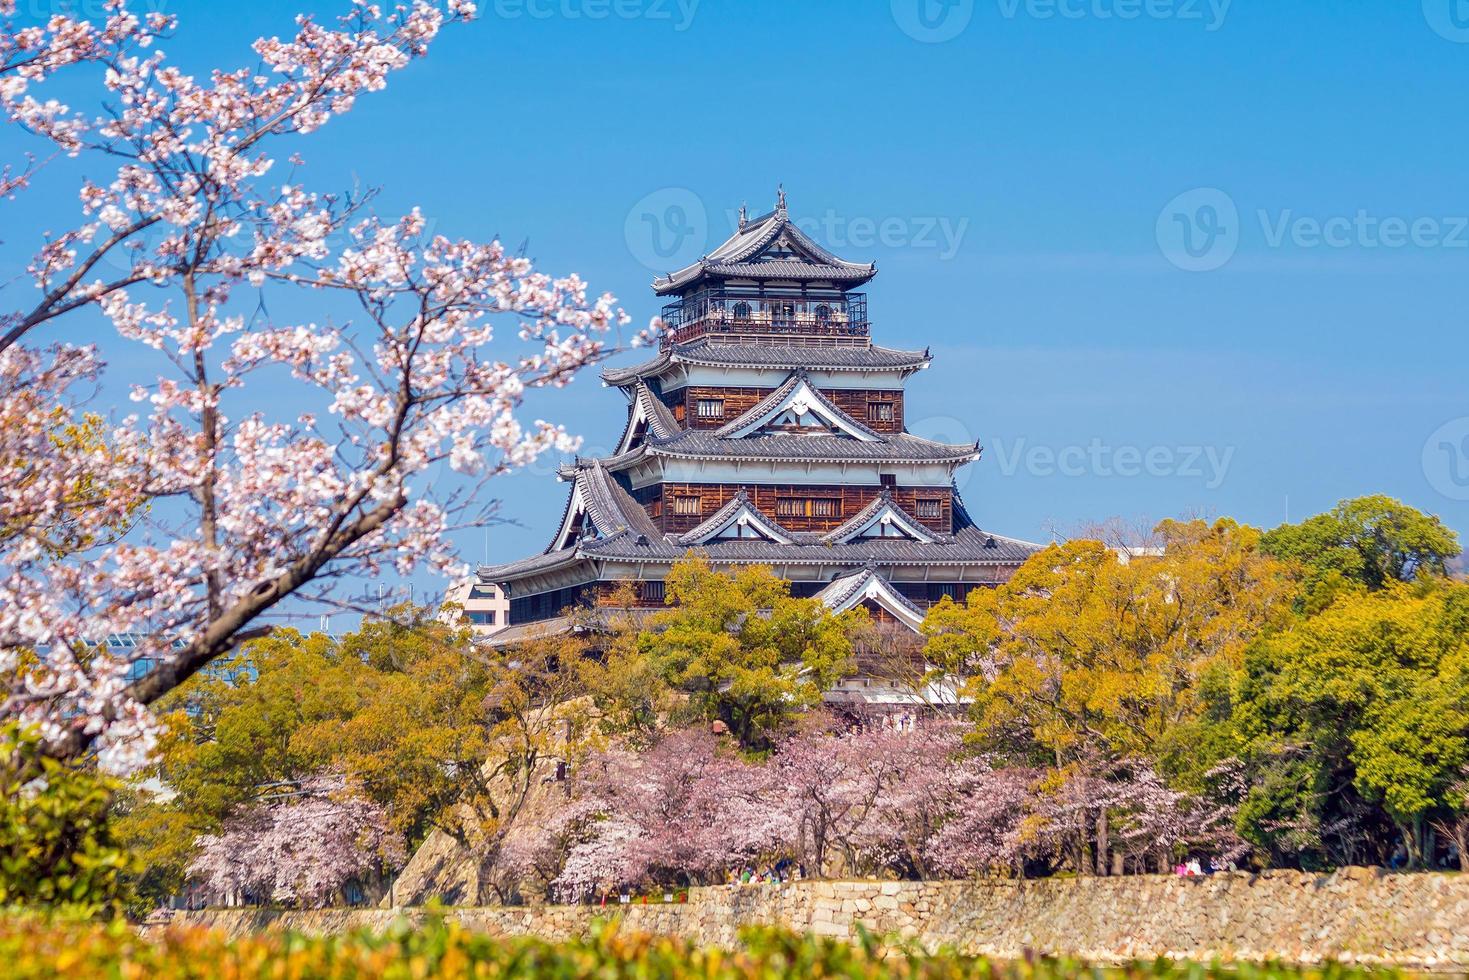 castillo de hiroshima durante la temporada de los cerezos en flor foto